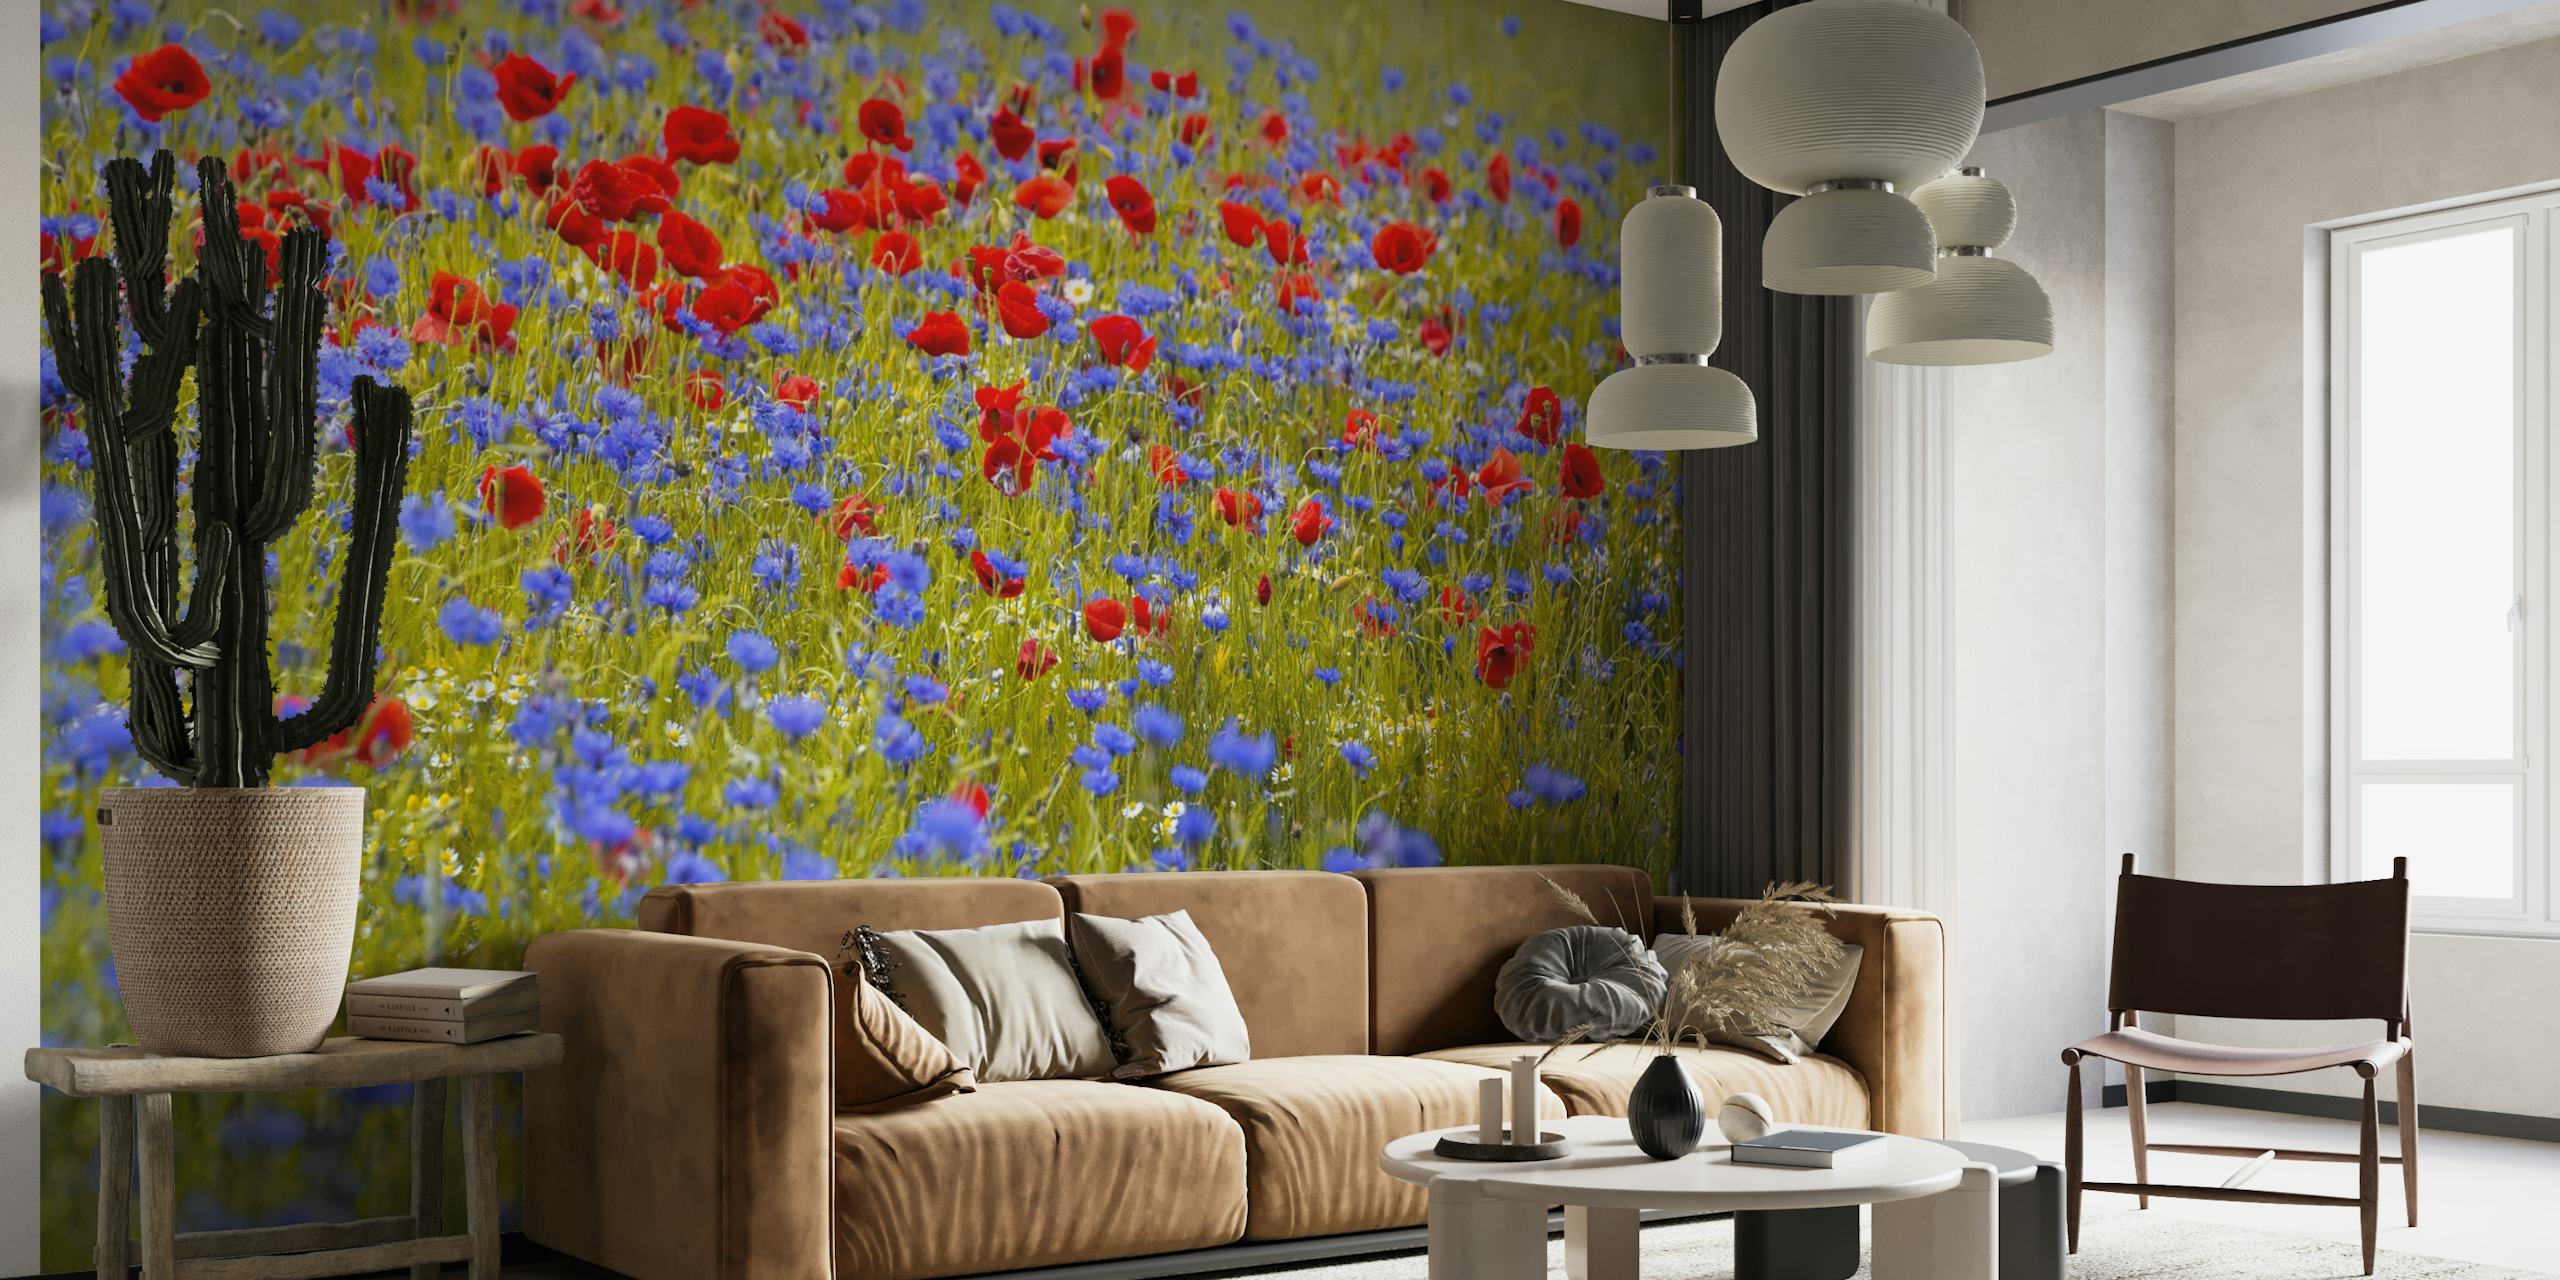 Mural de parede Blue Red Bloom Field com papoulas vermelhas e flores azuis